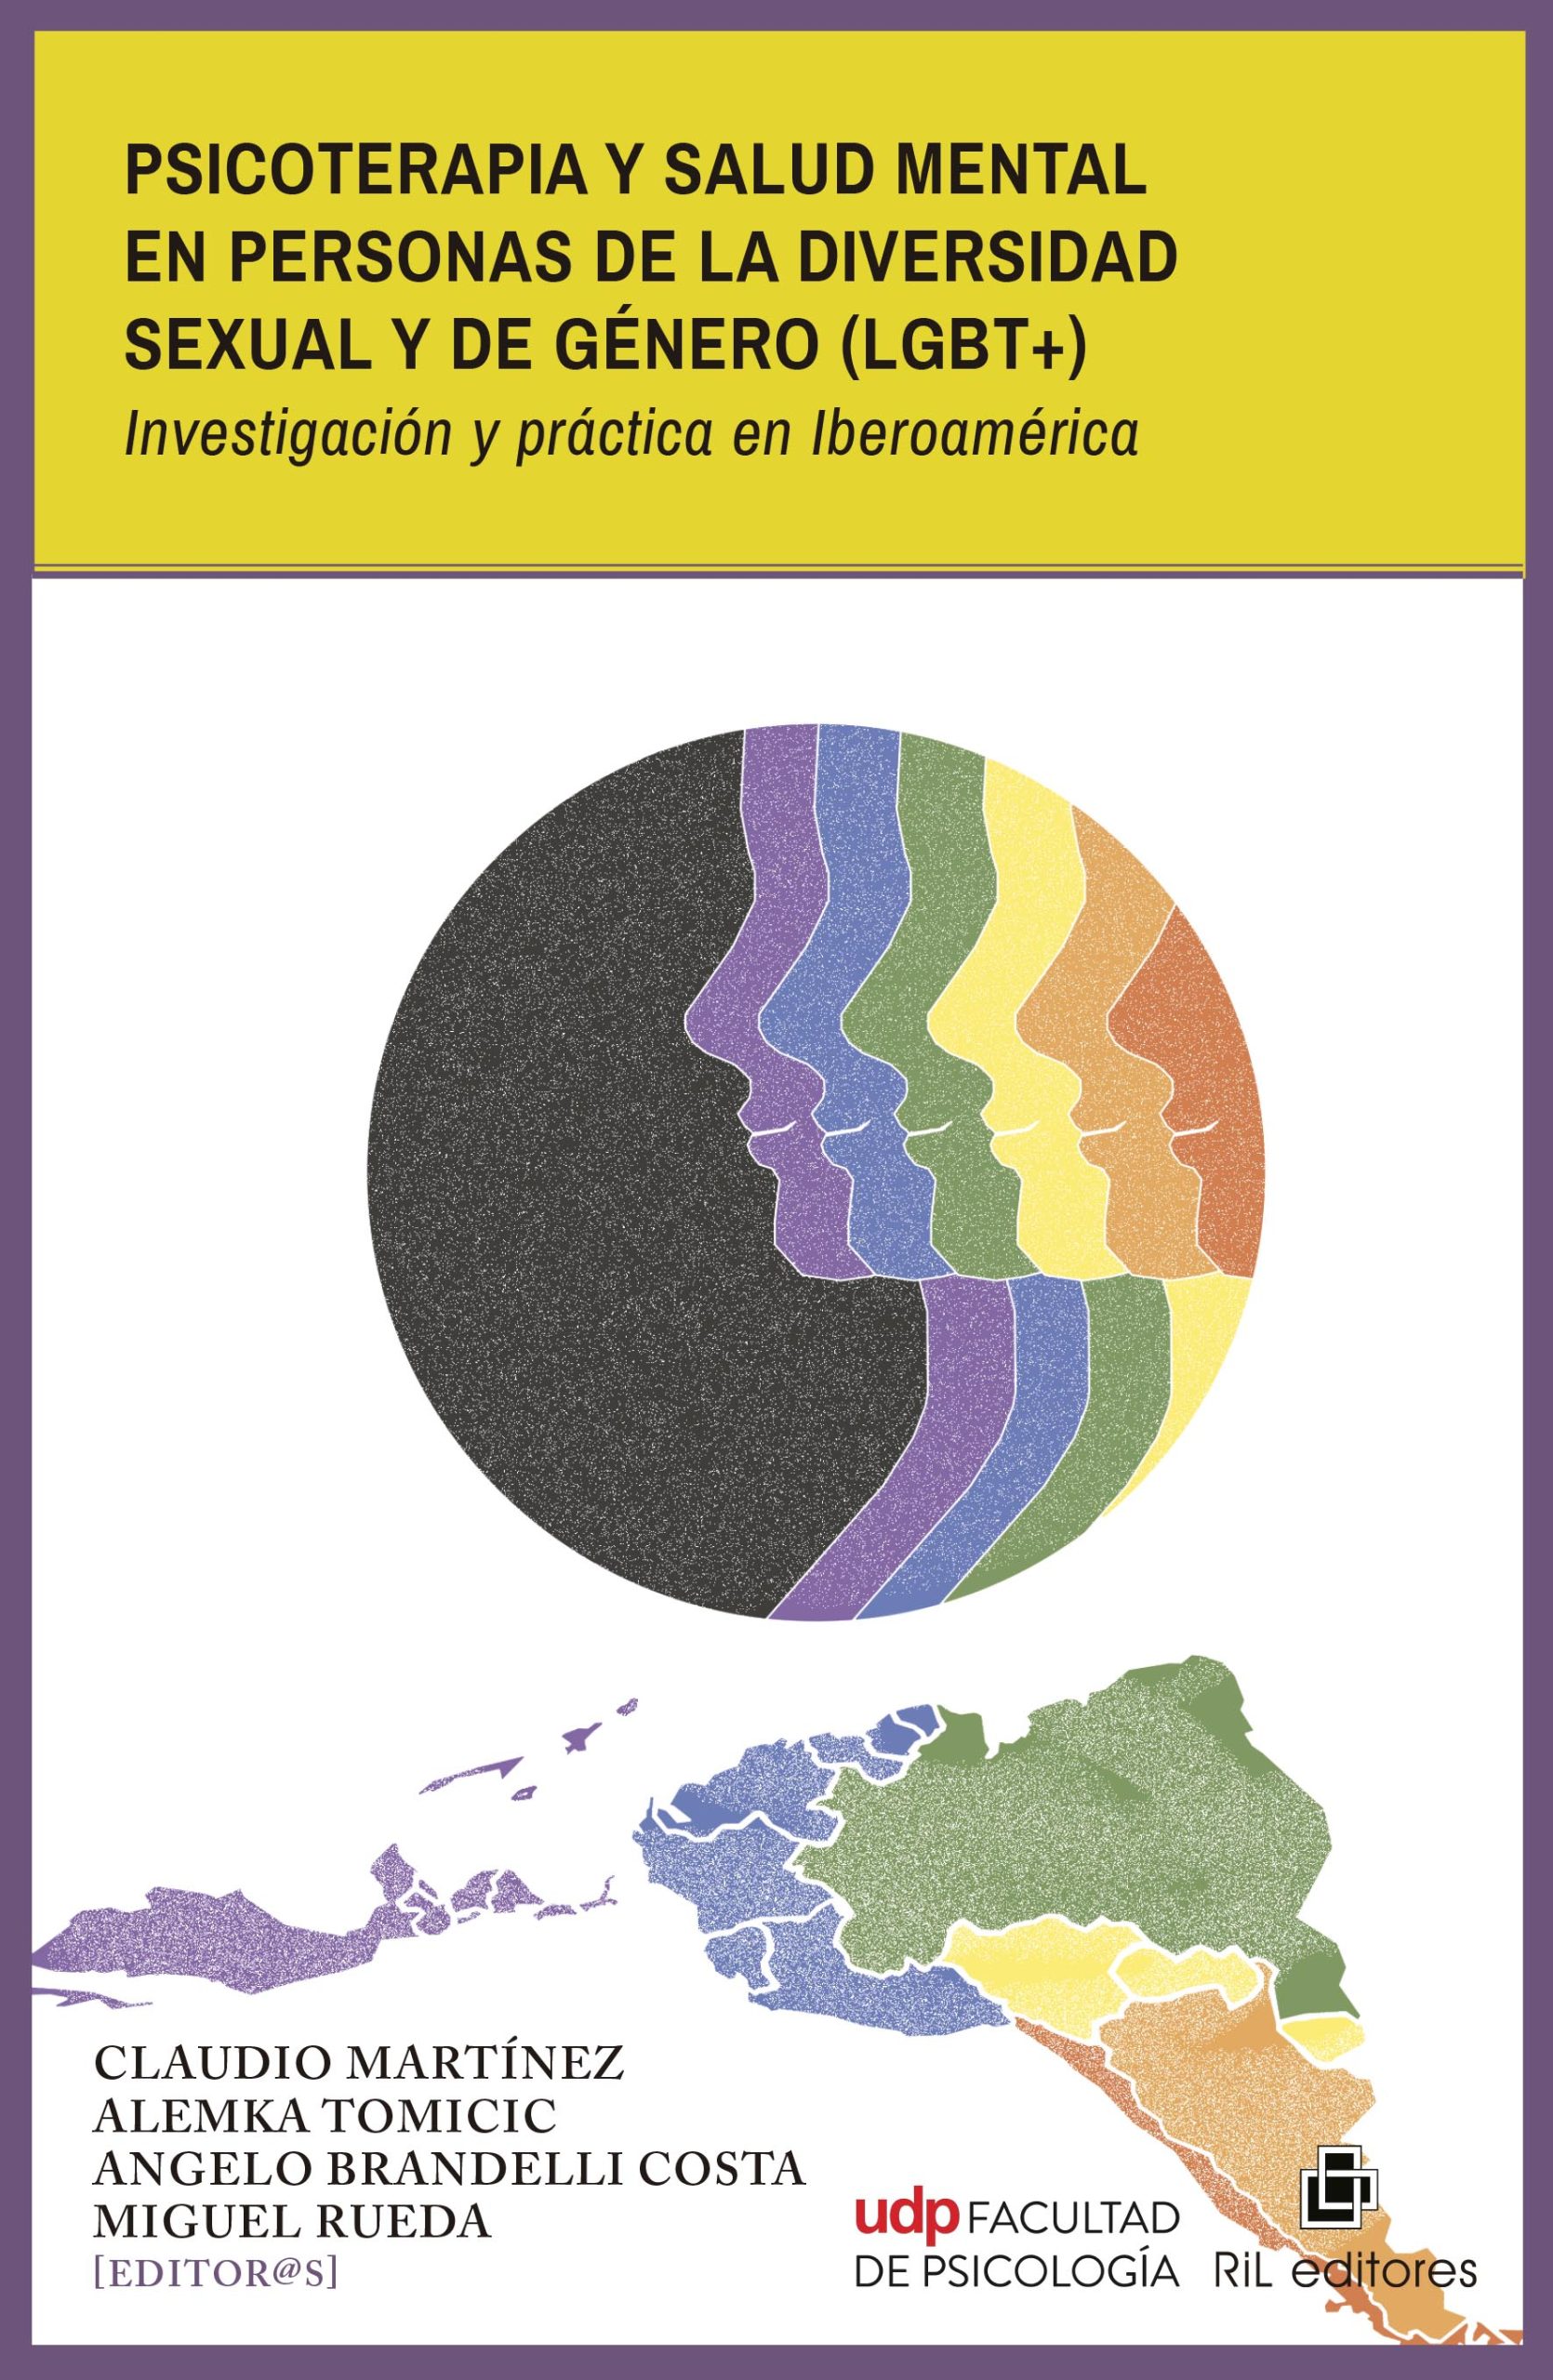 Psicoterapia y salud mental en personas de la diversidad sexual y de género (lgbt+). Investigación y práctica en Iberoamérica 1